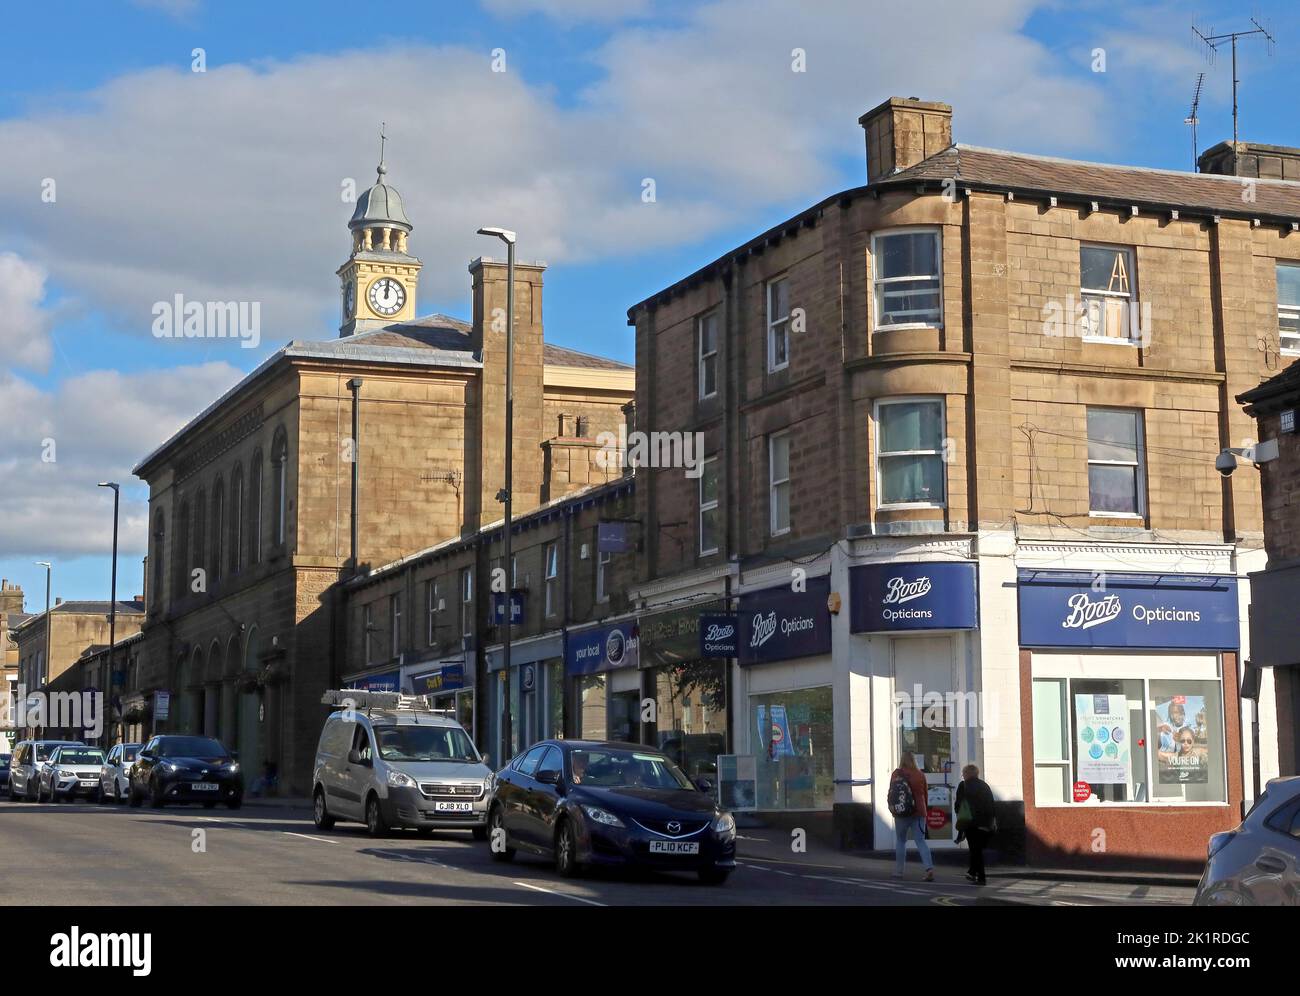 Vue sur la mairie de Glossop, le clocher et les boutiques de High Street West, notamment Boots Opticiens, Glossop, High Peak, Derbyshire, ANGLETERRE, ROYAUME-UNI, SK13 8AL Banque D'Images